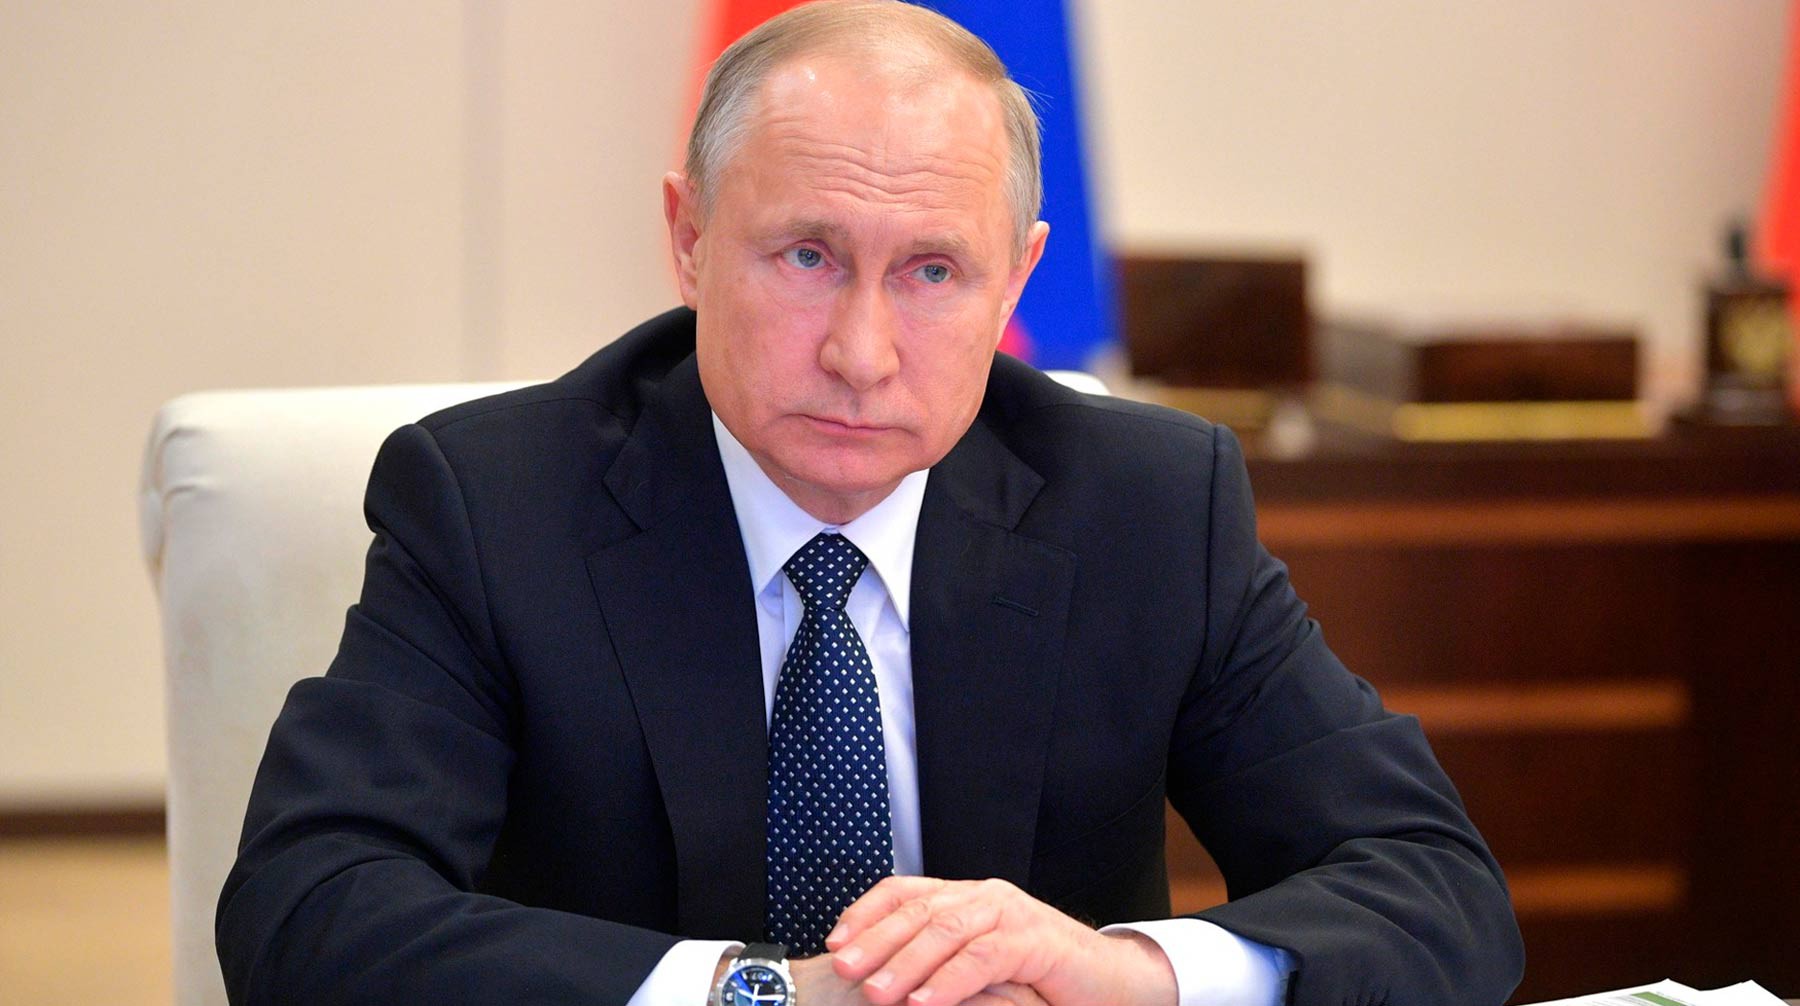 Dailystorm - «Надеюсь, о цене договоримся»: Путин согласился на пошив для него спортивной одежды коллекции Putin Team